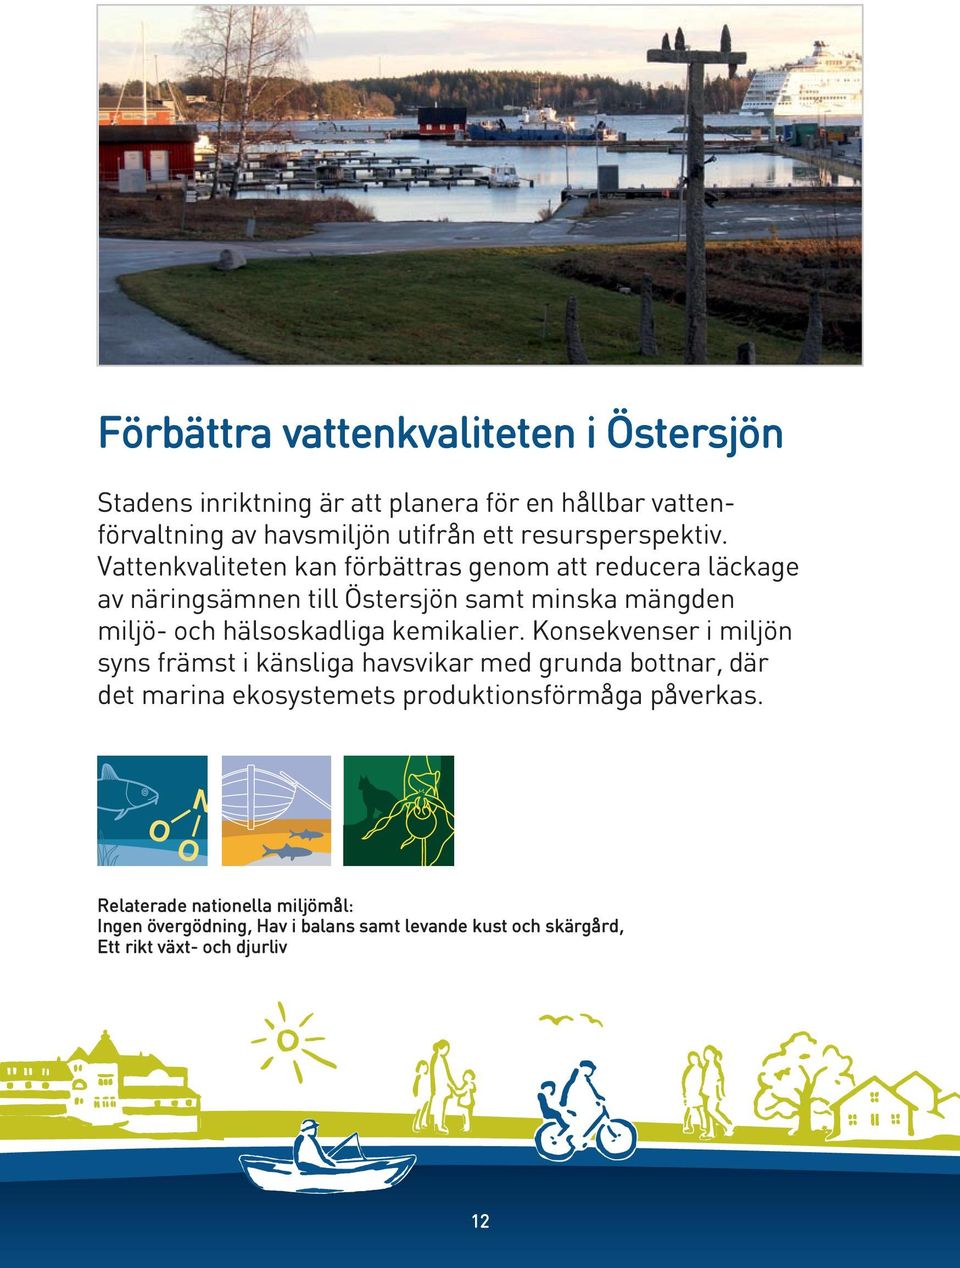 Vattenkvaliteten kan förbättras genom att reducera läckage av näringsämnen till Östersjön samt minska mängden miljö- och hälsoskadliga